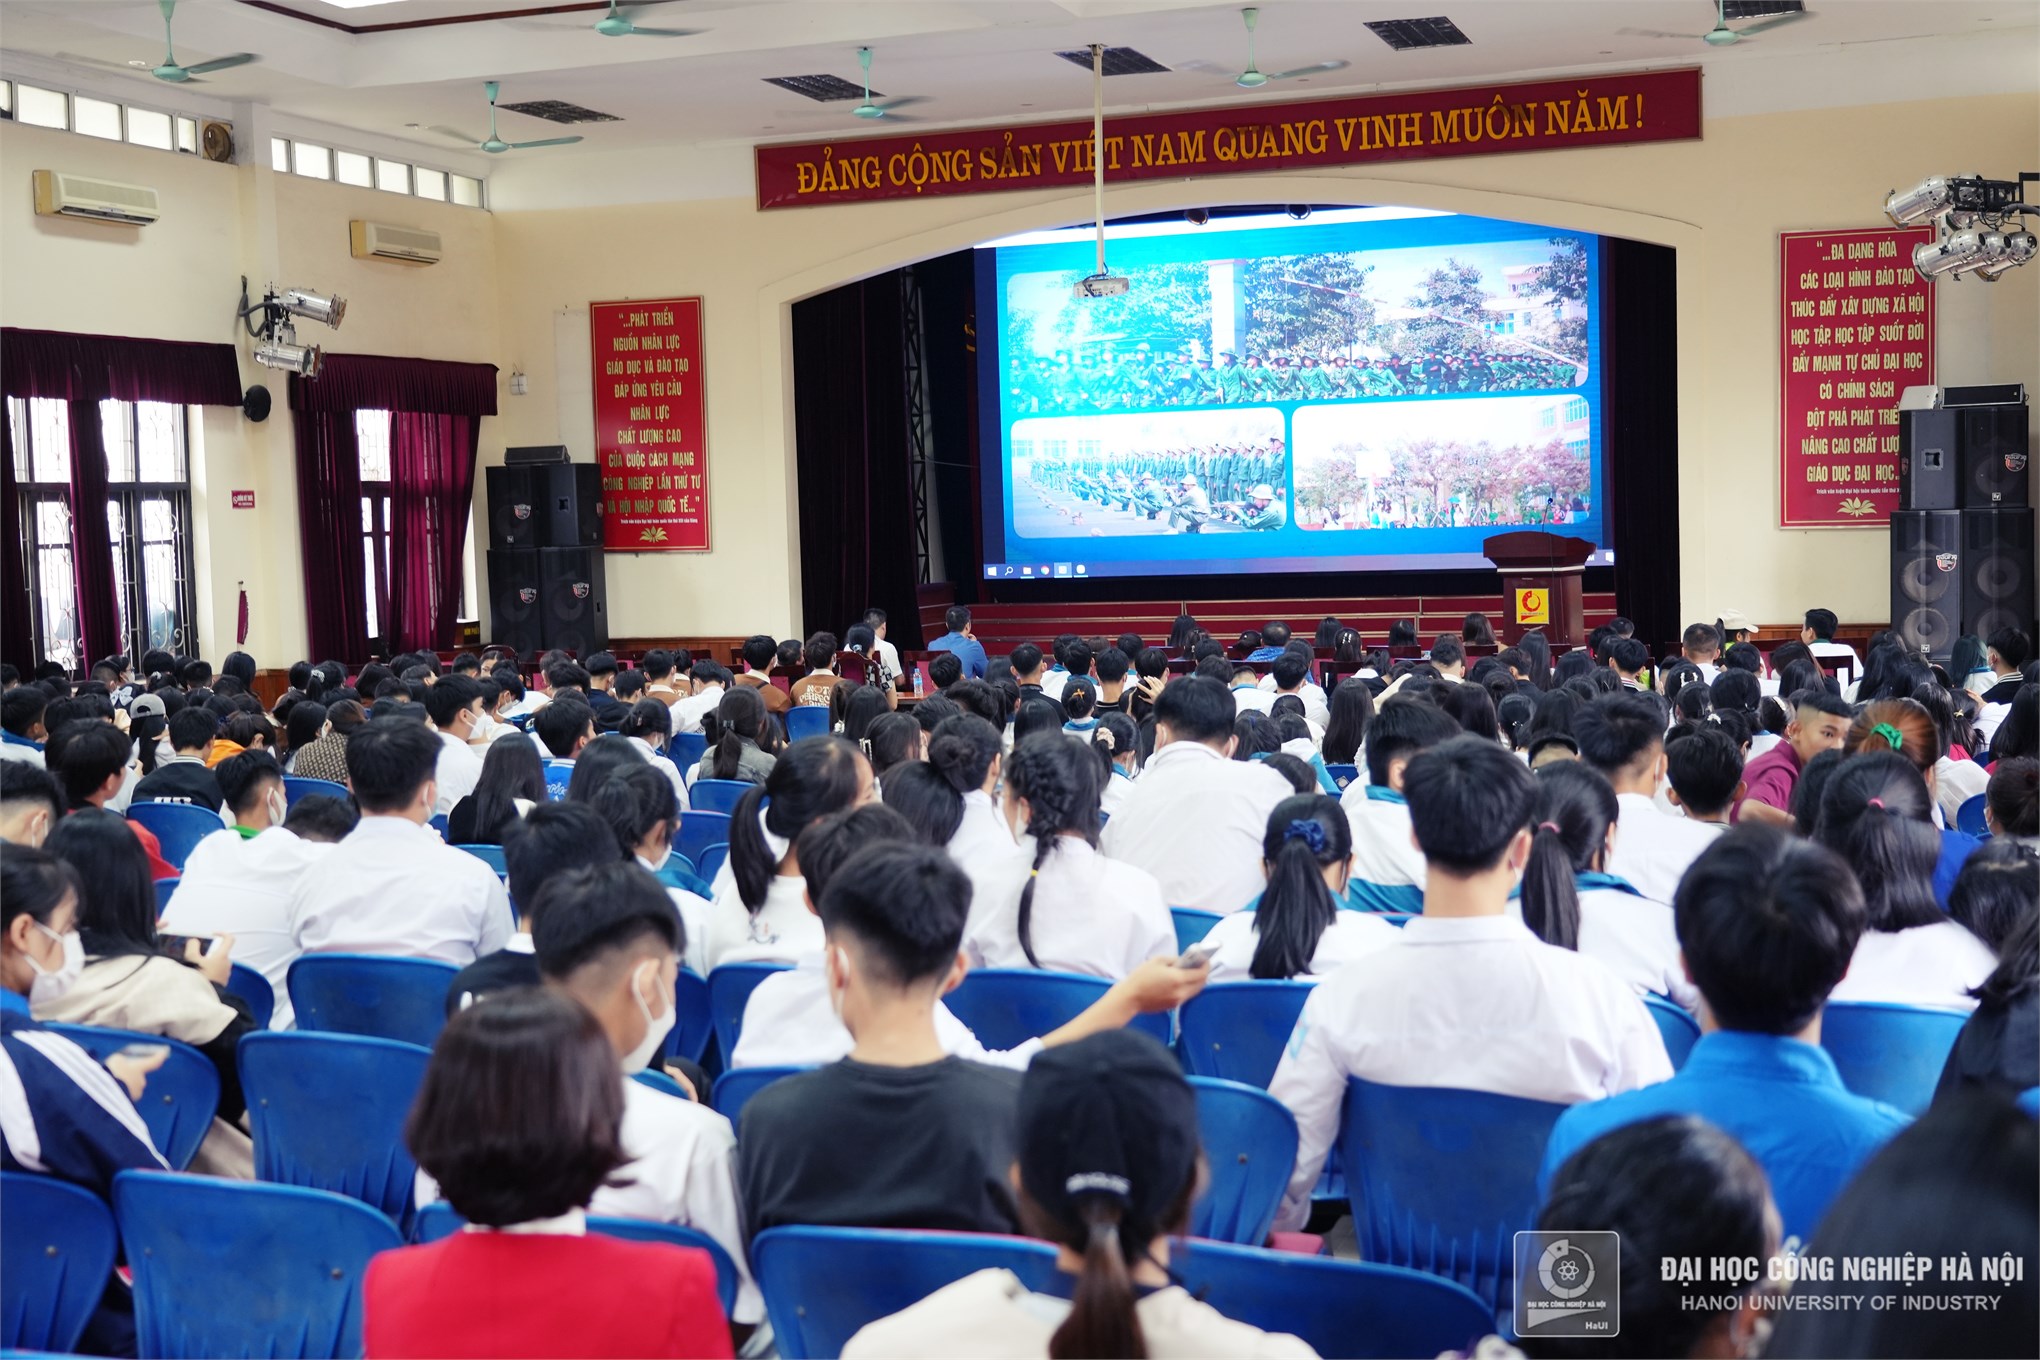 Gần 900 giáo viên, phụ huynh và học sinh trường THPT Lê Chân, Quảng Ninh thăm Đại học Công nghiệp Hà Nội